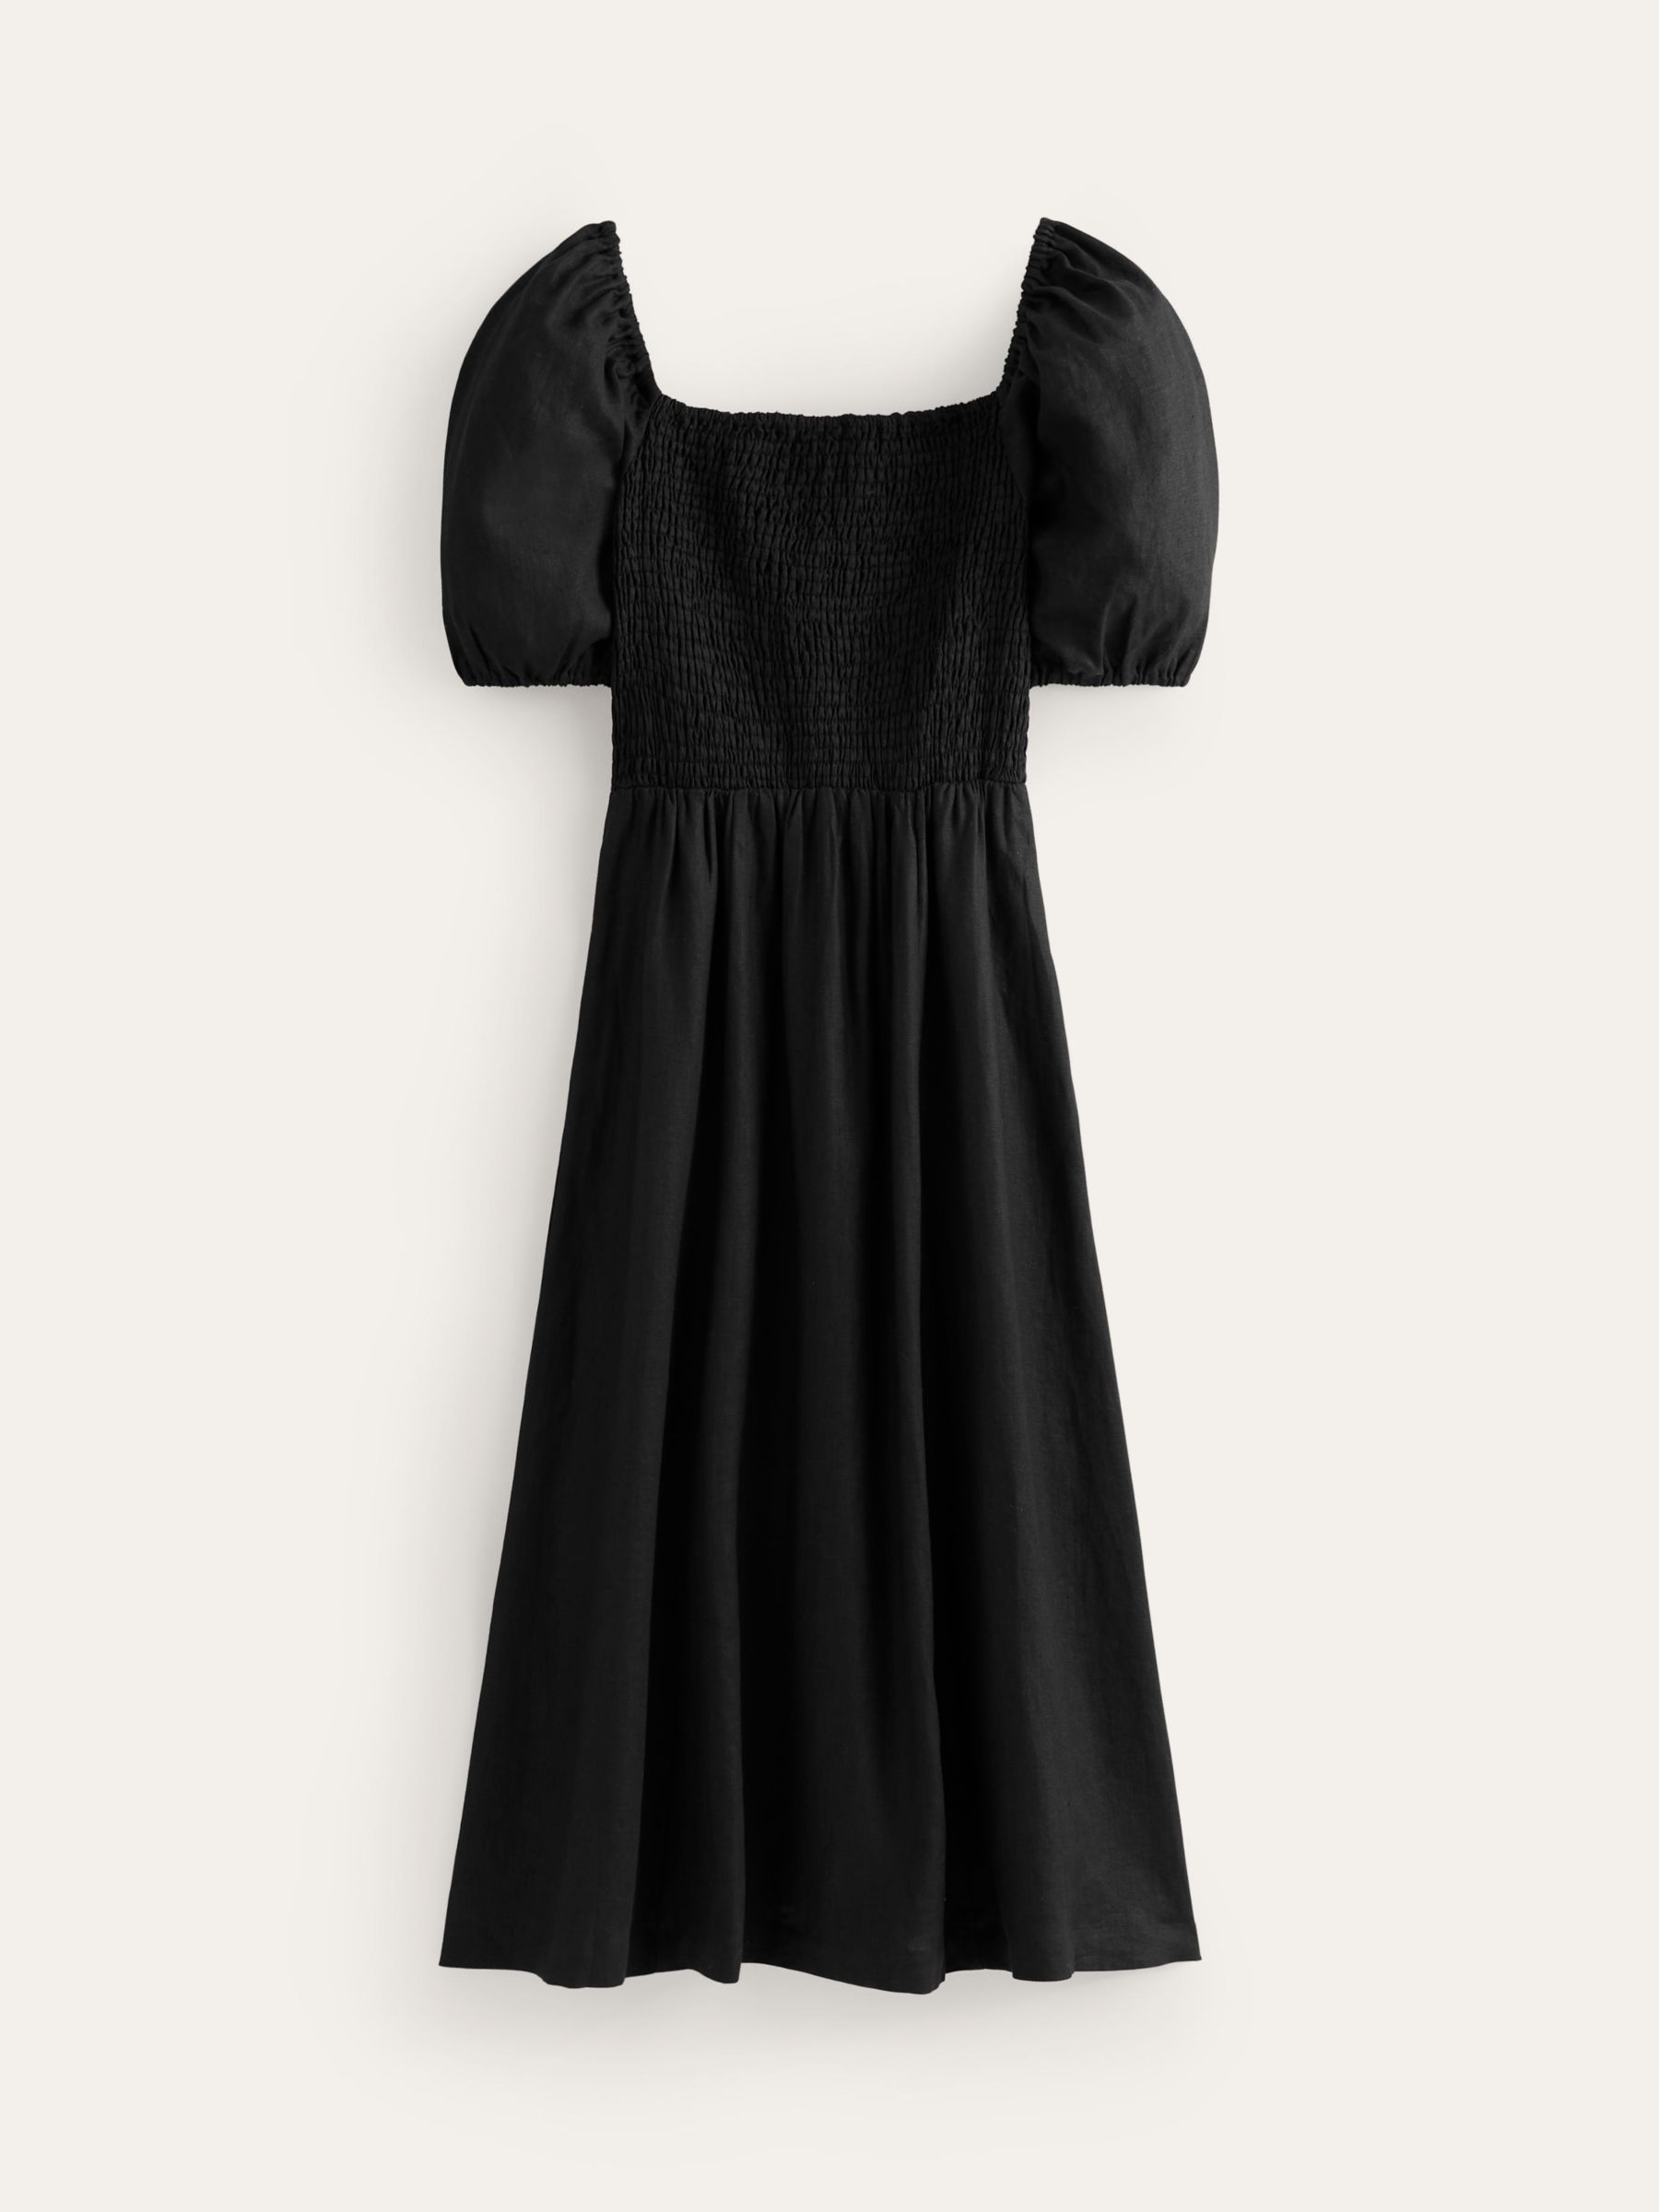 Boden Sky Smocked Linen Midi Dress, Black, 14